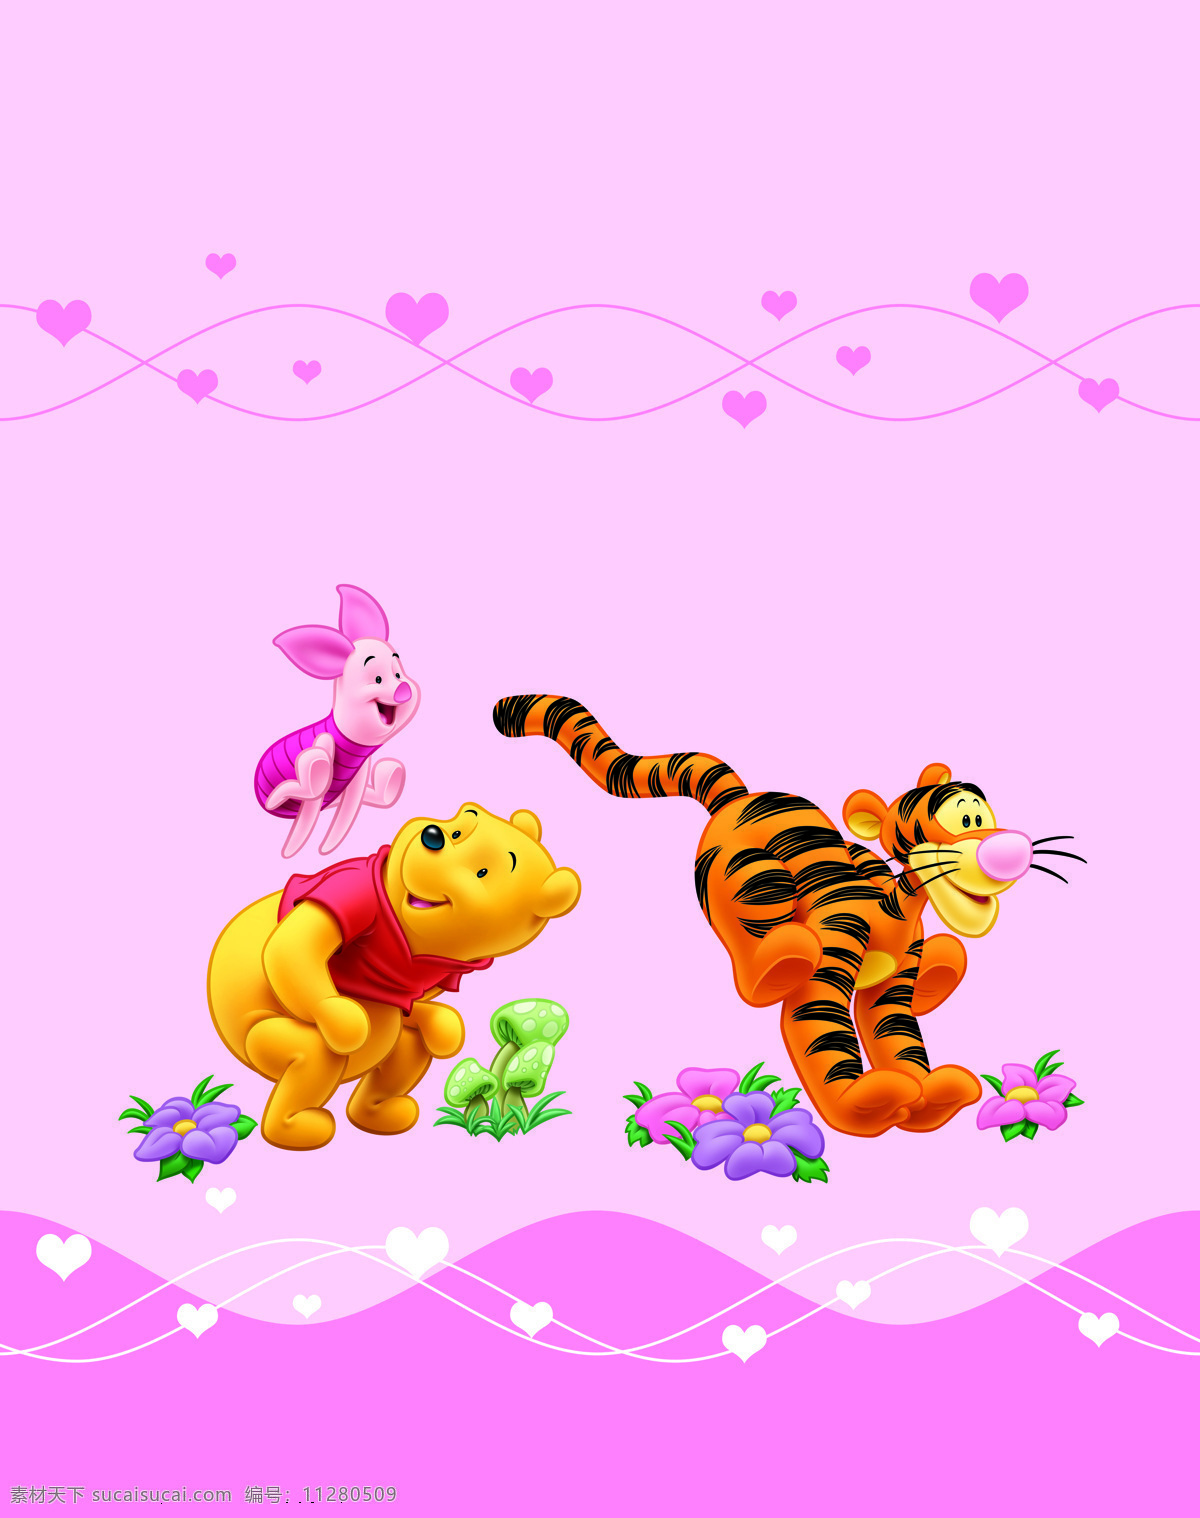 小熊维尼 小伙伴 老虎 朱 熊 移门 背景墙 爱心 线条 粉色 动漫动画